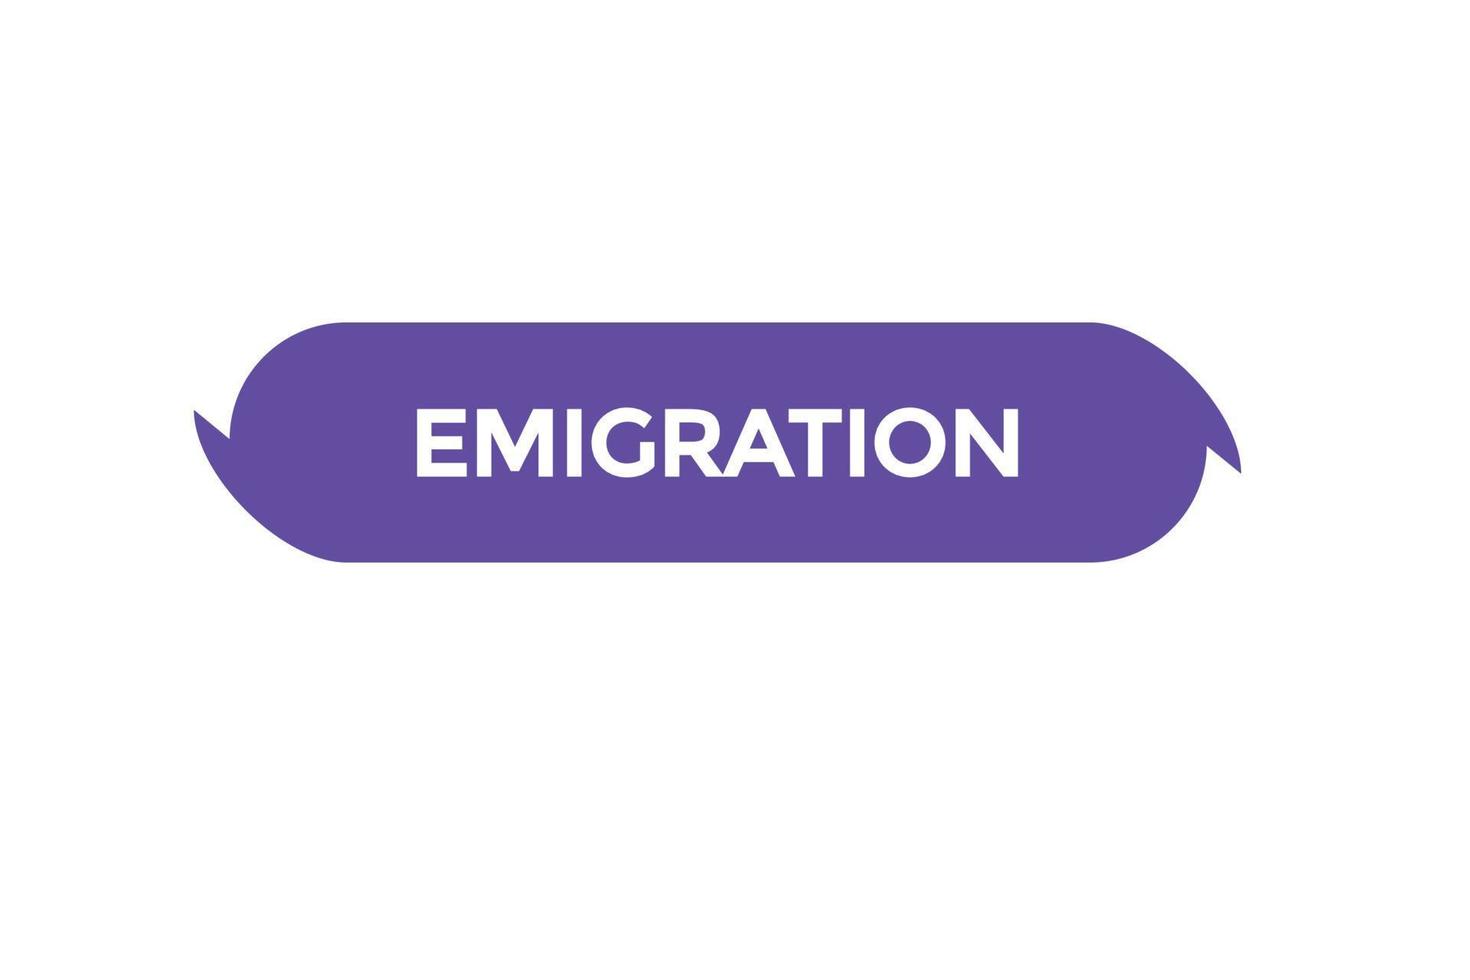 émigration bouton vecteurs.sign étiquette discours bulle émigration vecteur